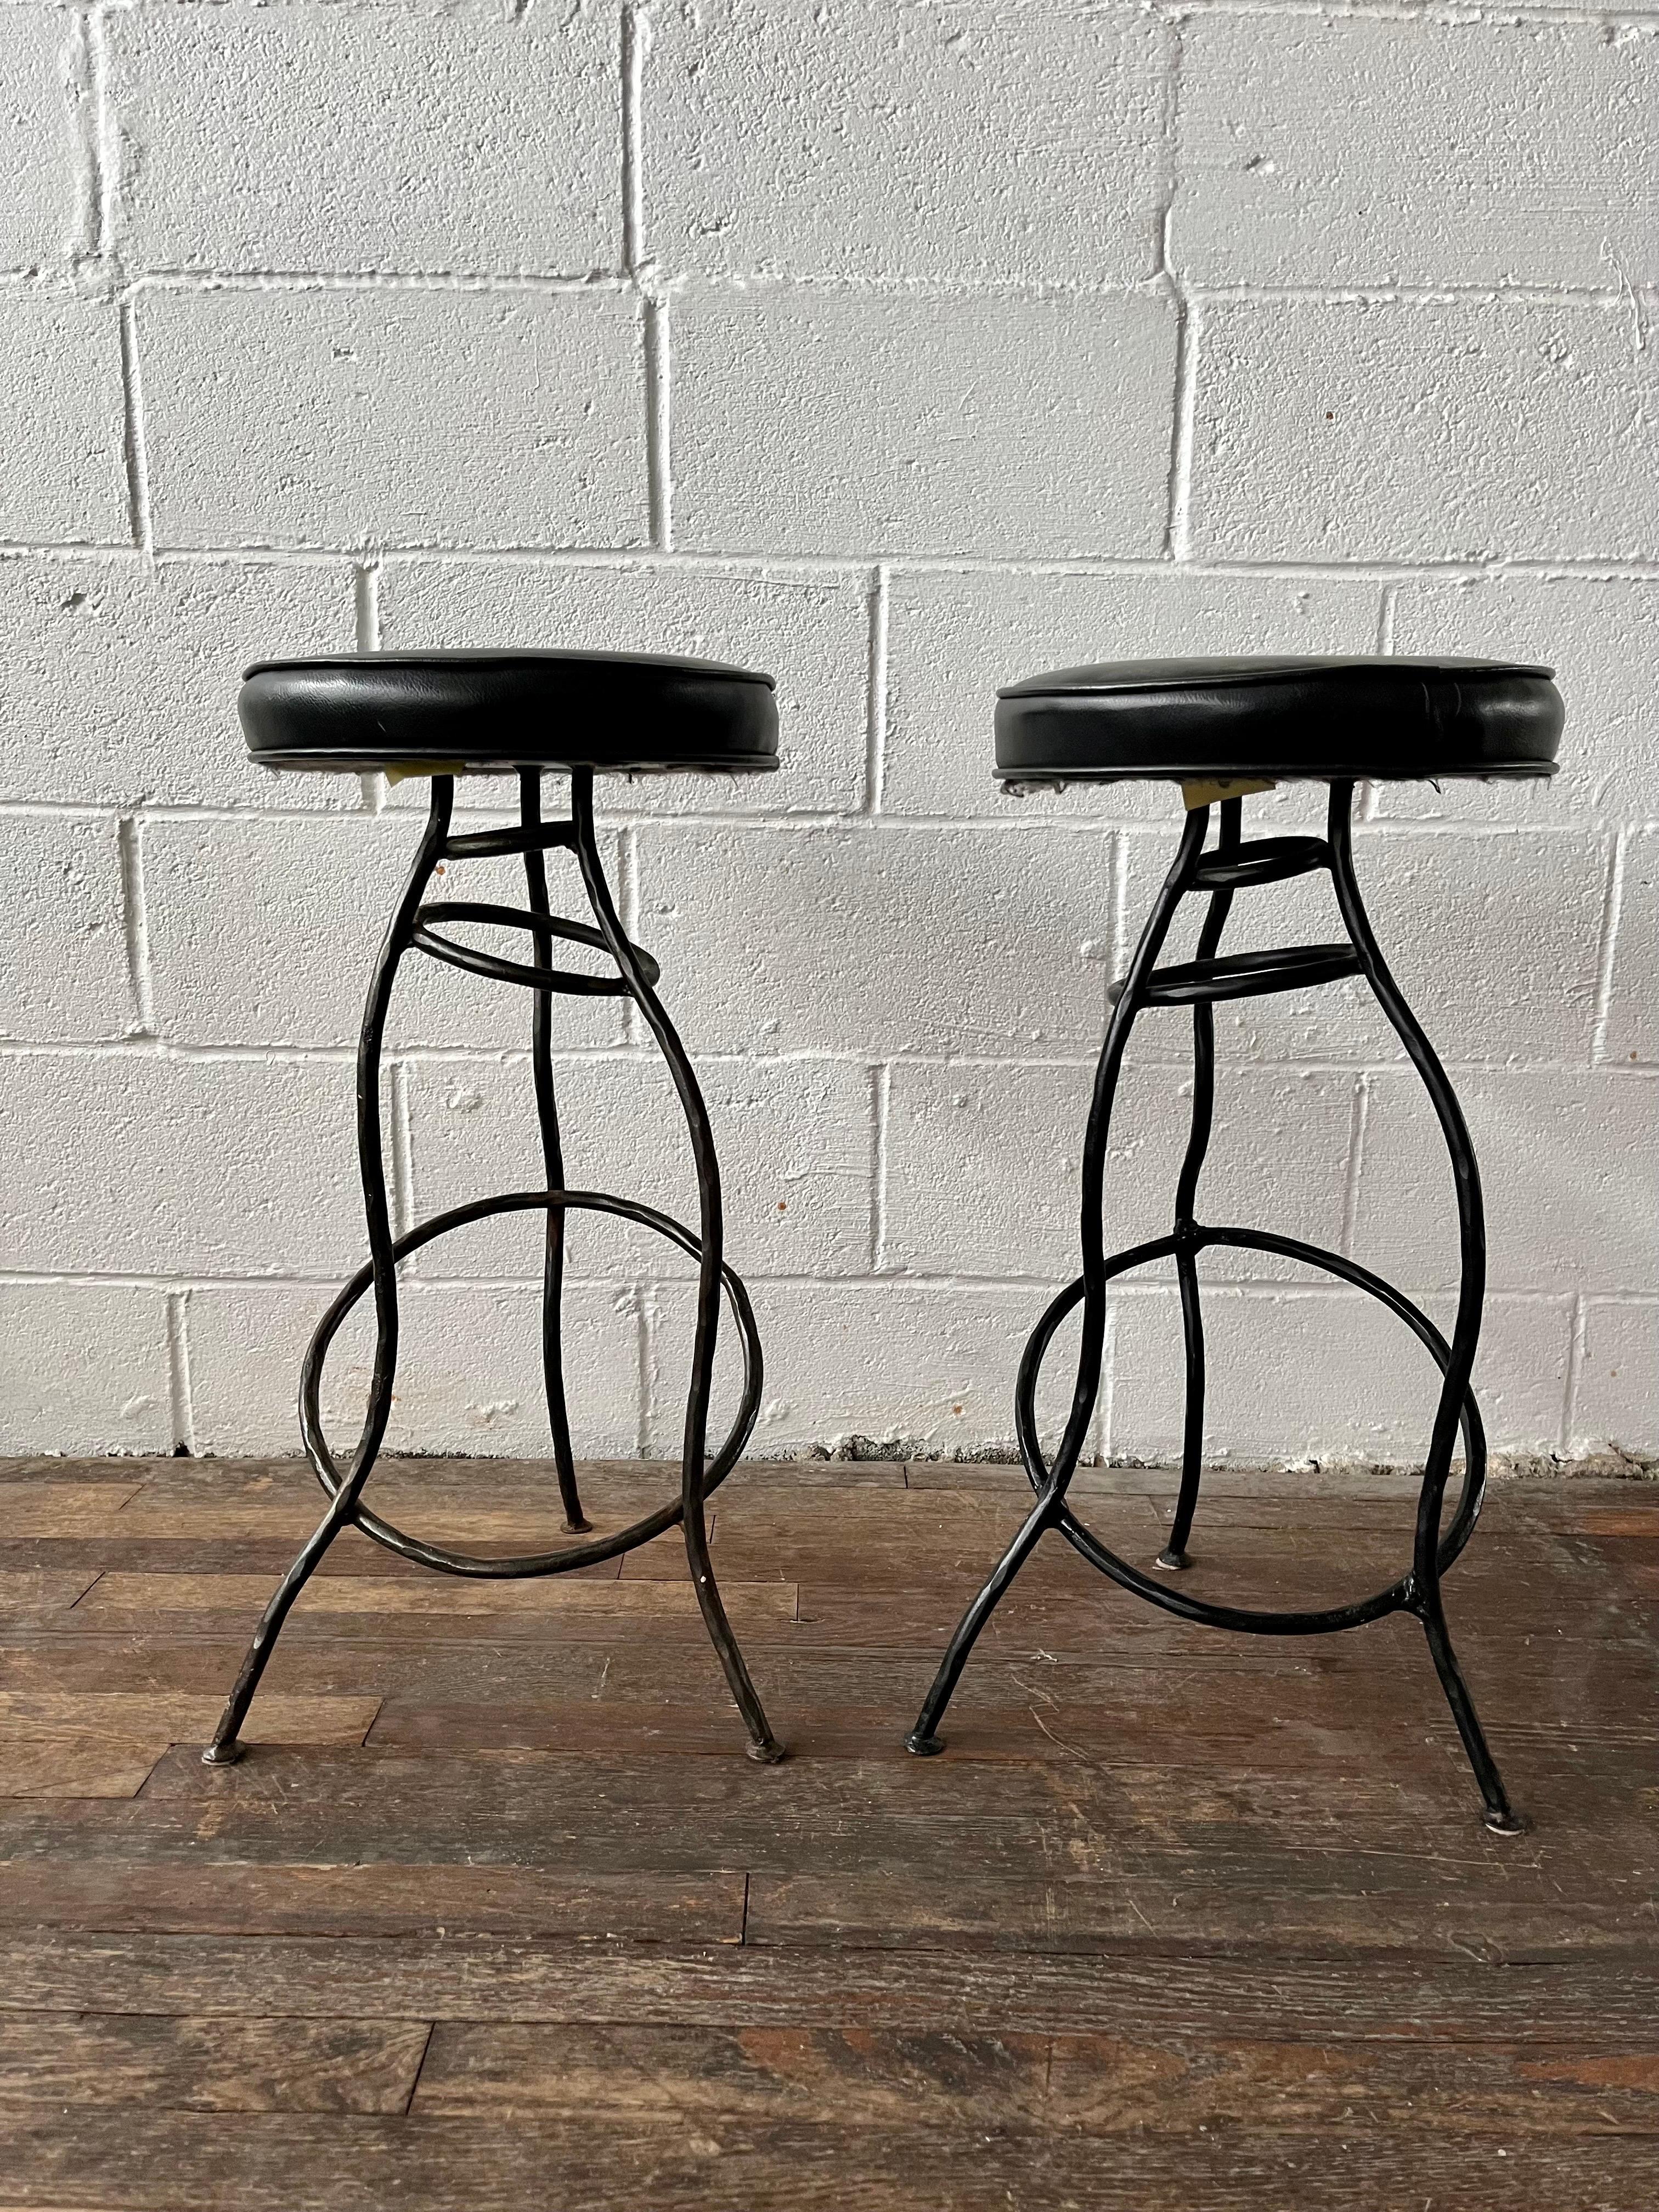 Einzigartiges Paar Barhocker aus gehämmertem Eisen mit schwarzen Vinylsitzen. Skurriles Design mit abgewinkelter Form. 
Bordsteinkante nach NYC/Philly $350